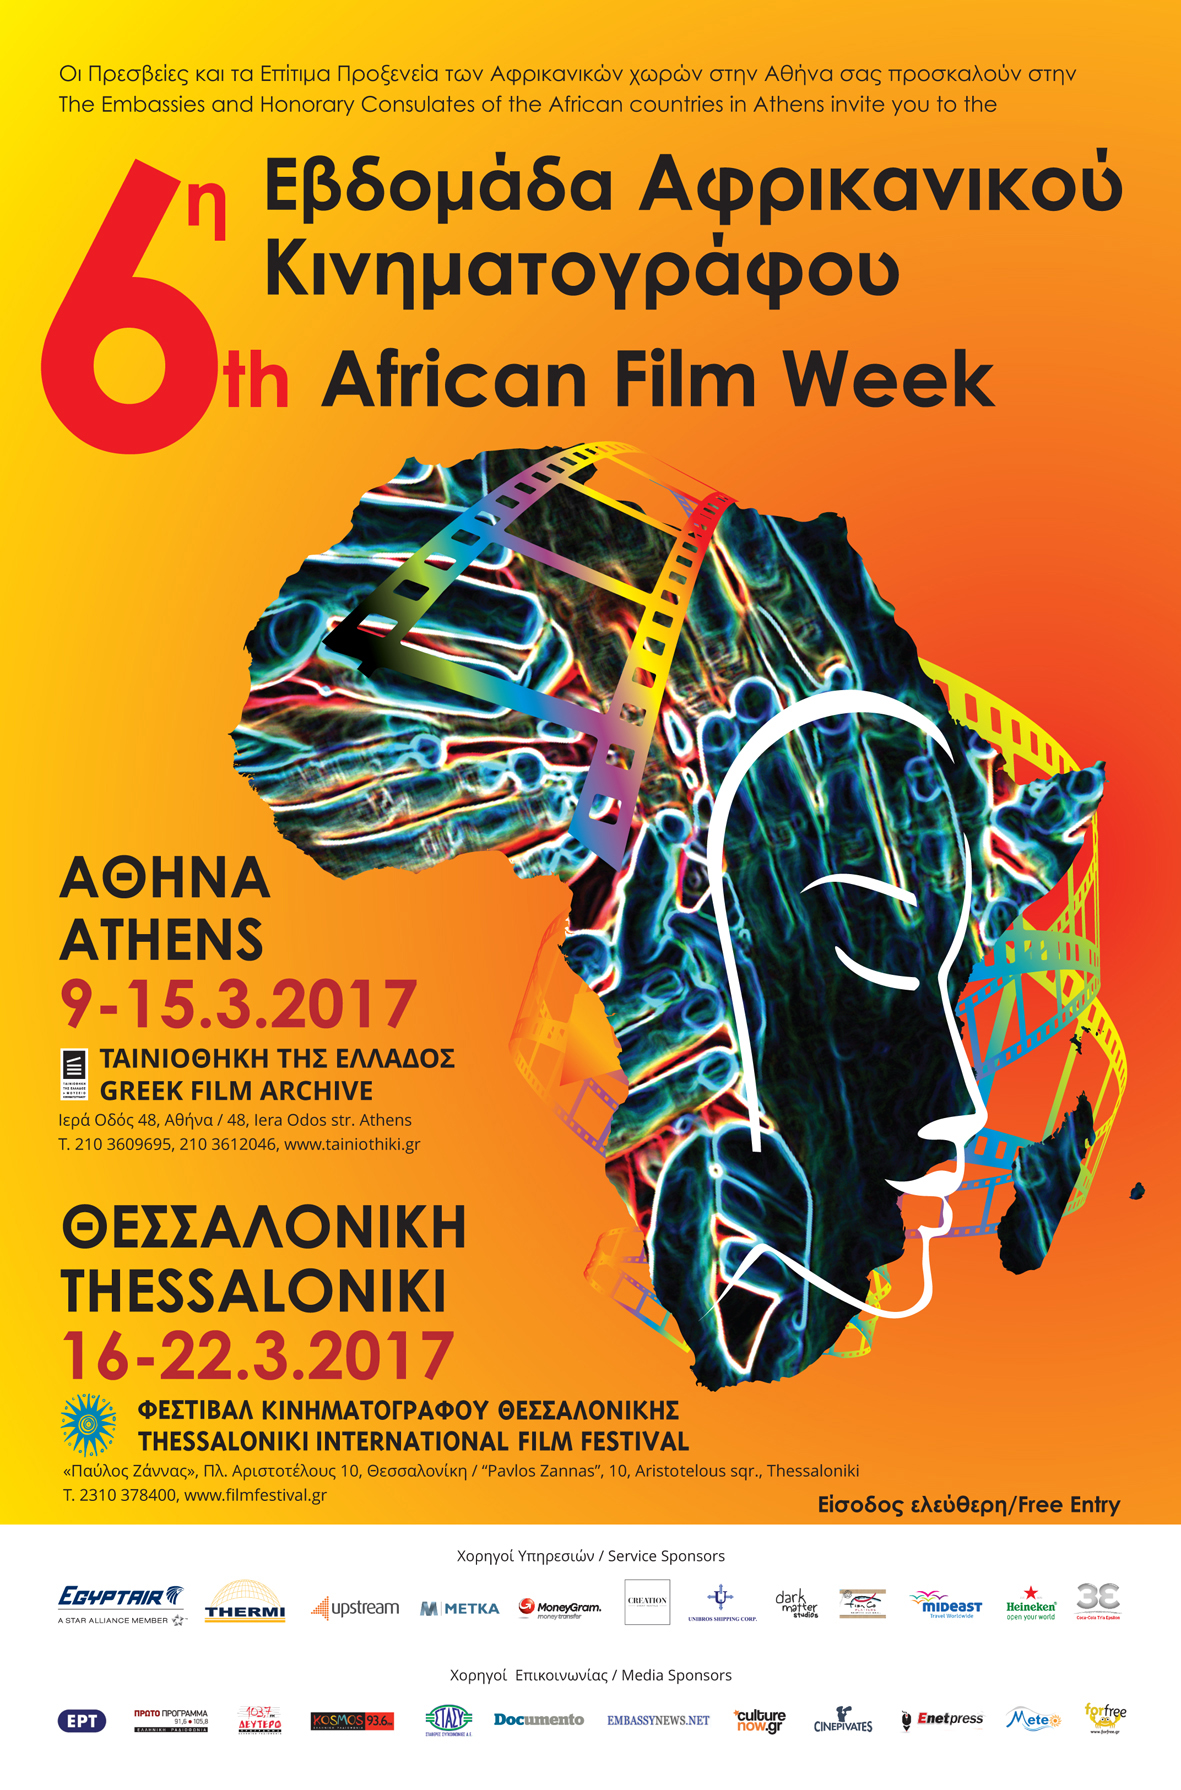 Κινηματογραφικό ταξίδι στην Αφρική σε Αθήνα και Θεσσαλονίκη